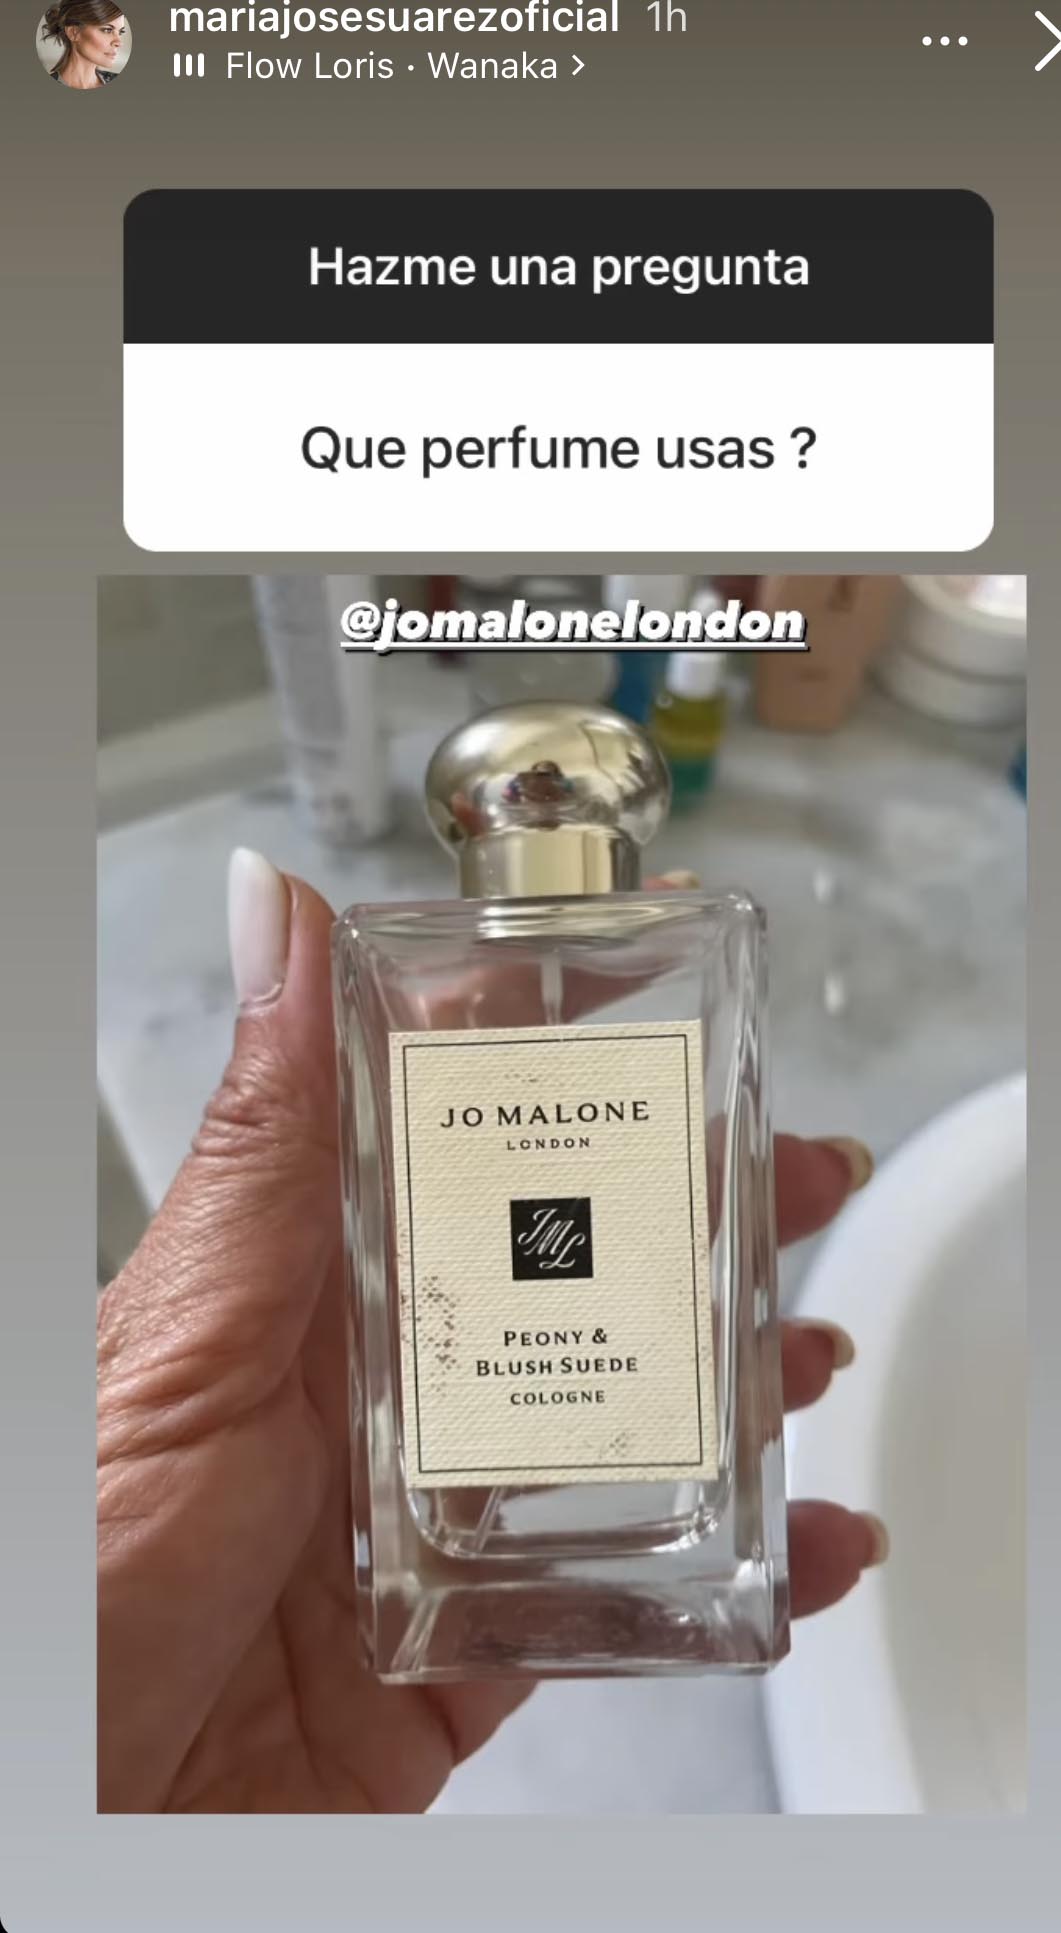 María José Suárez perfume